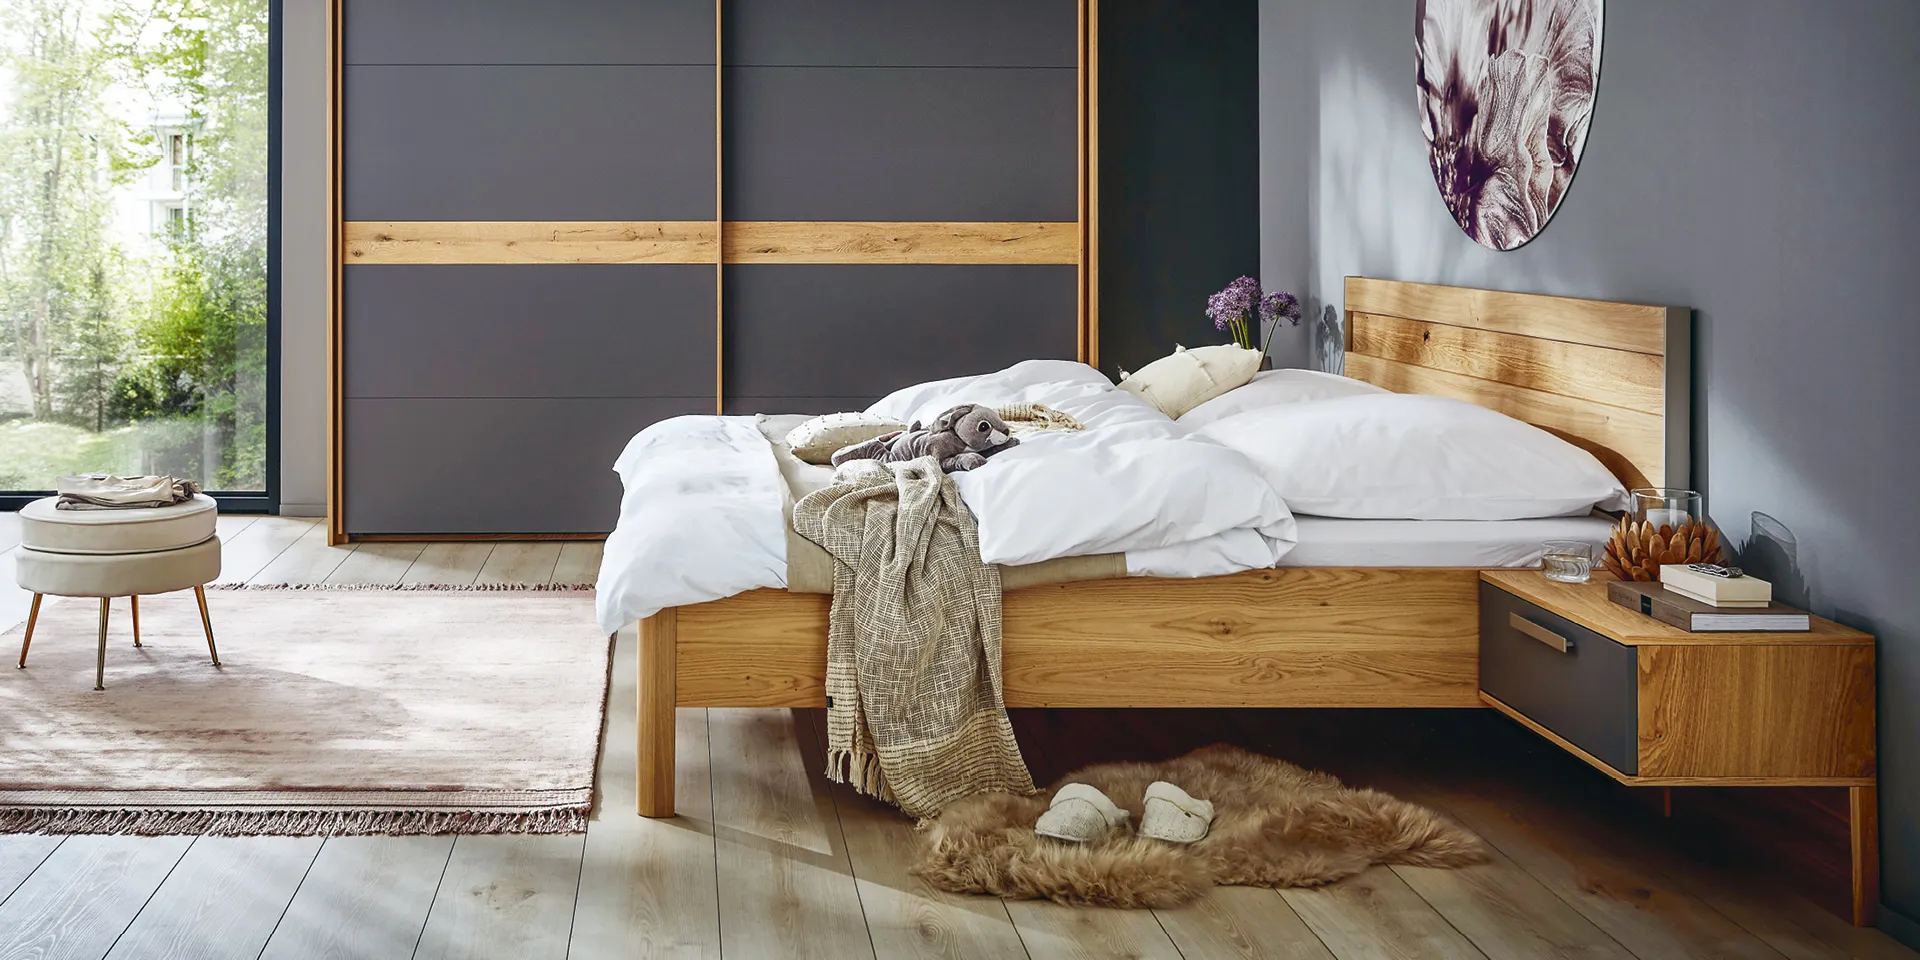 Bett, Nachttisch und Kleiderschrank im Schlafzimmer im modernen Materialmix aus Holz und dunklen Fronten